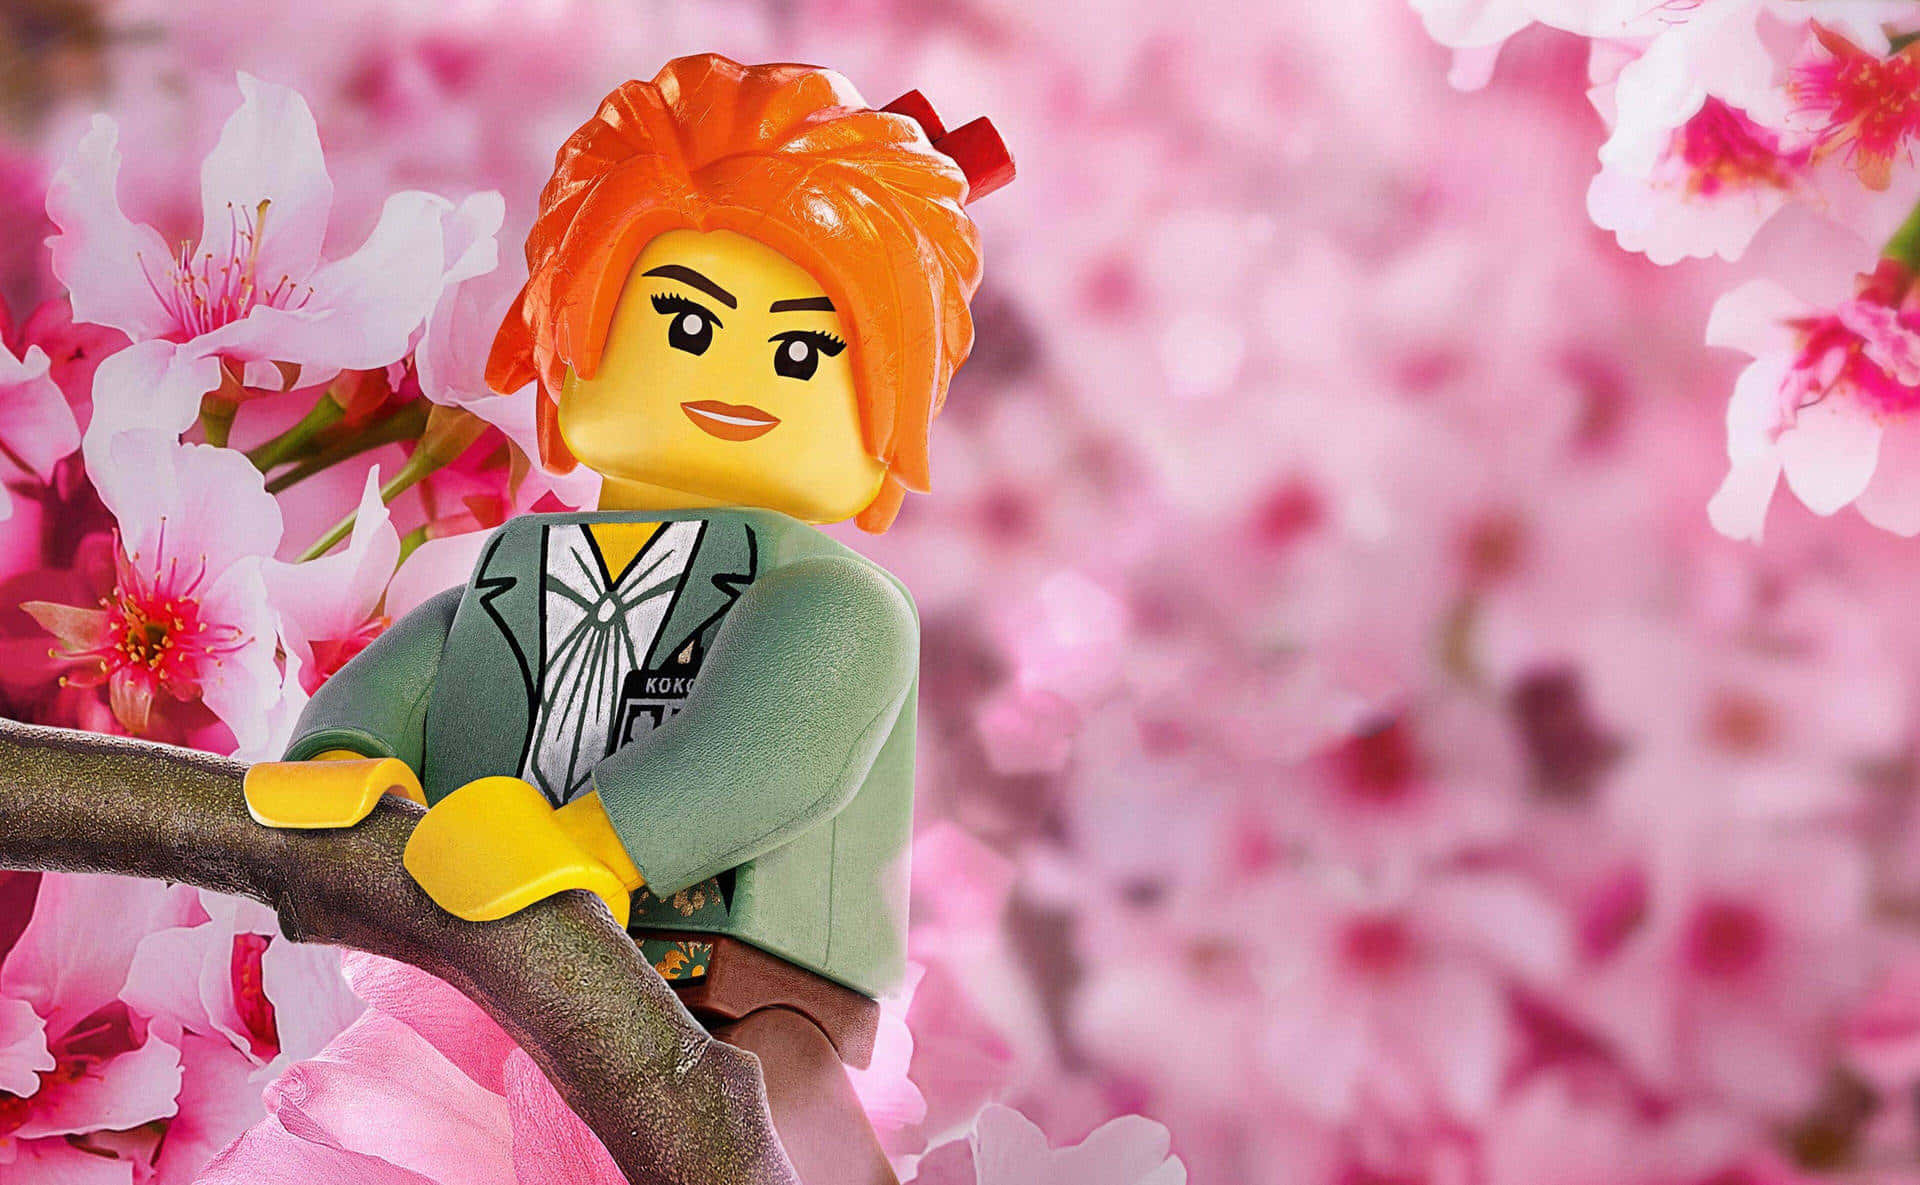 Kreativeköpfe Blühen Auf Mit Lego® Und Unendlicher Vorstellungskraft.